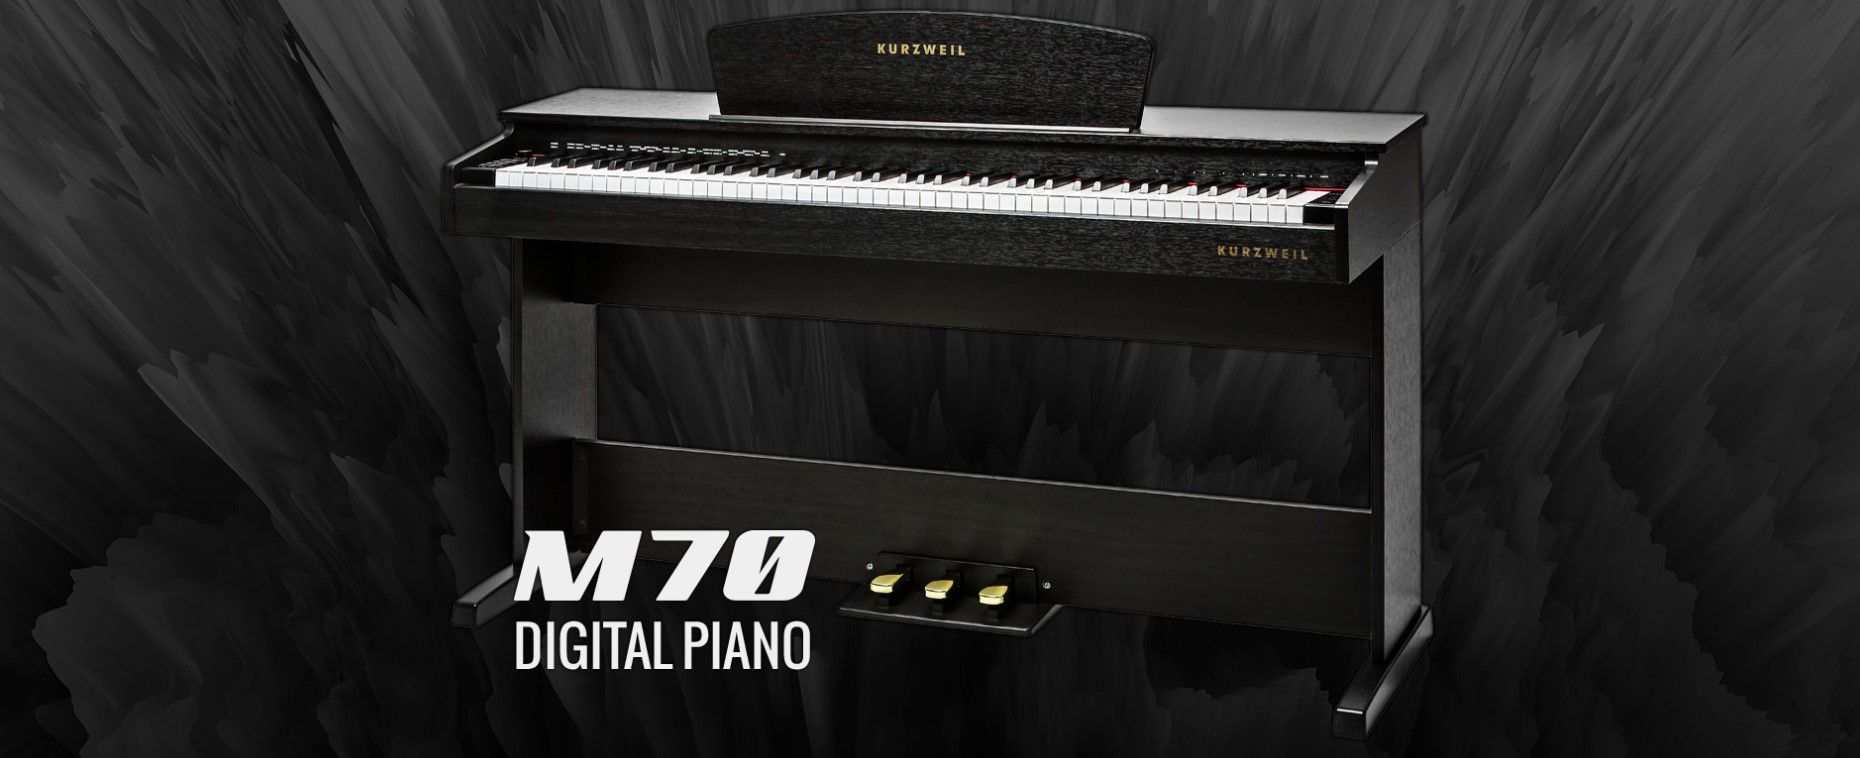  hrací digitální piano kurzweil M70 SR připojení sluchátek výborný poměr cena kvalita snadné ovládání usb port midi automatické doprovody